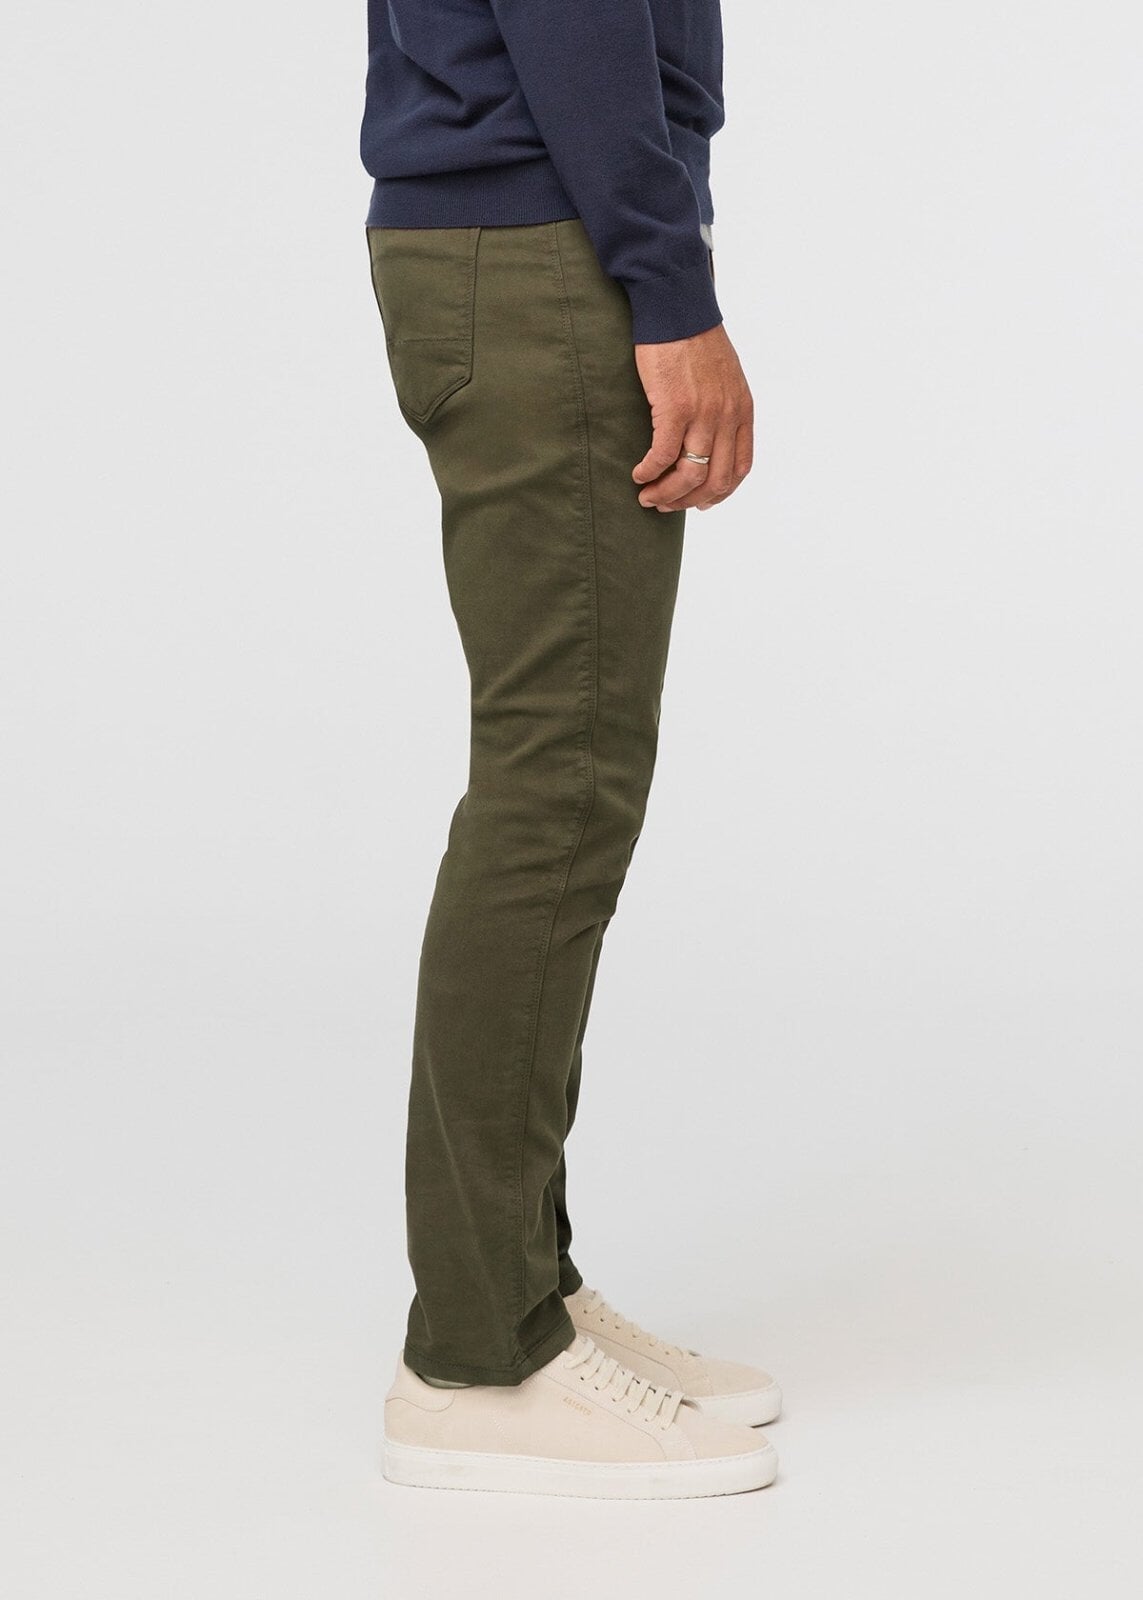 Men's Pants - Work Pants & Duck Canvas Jeans , Green